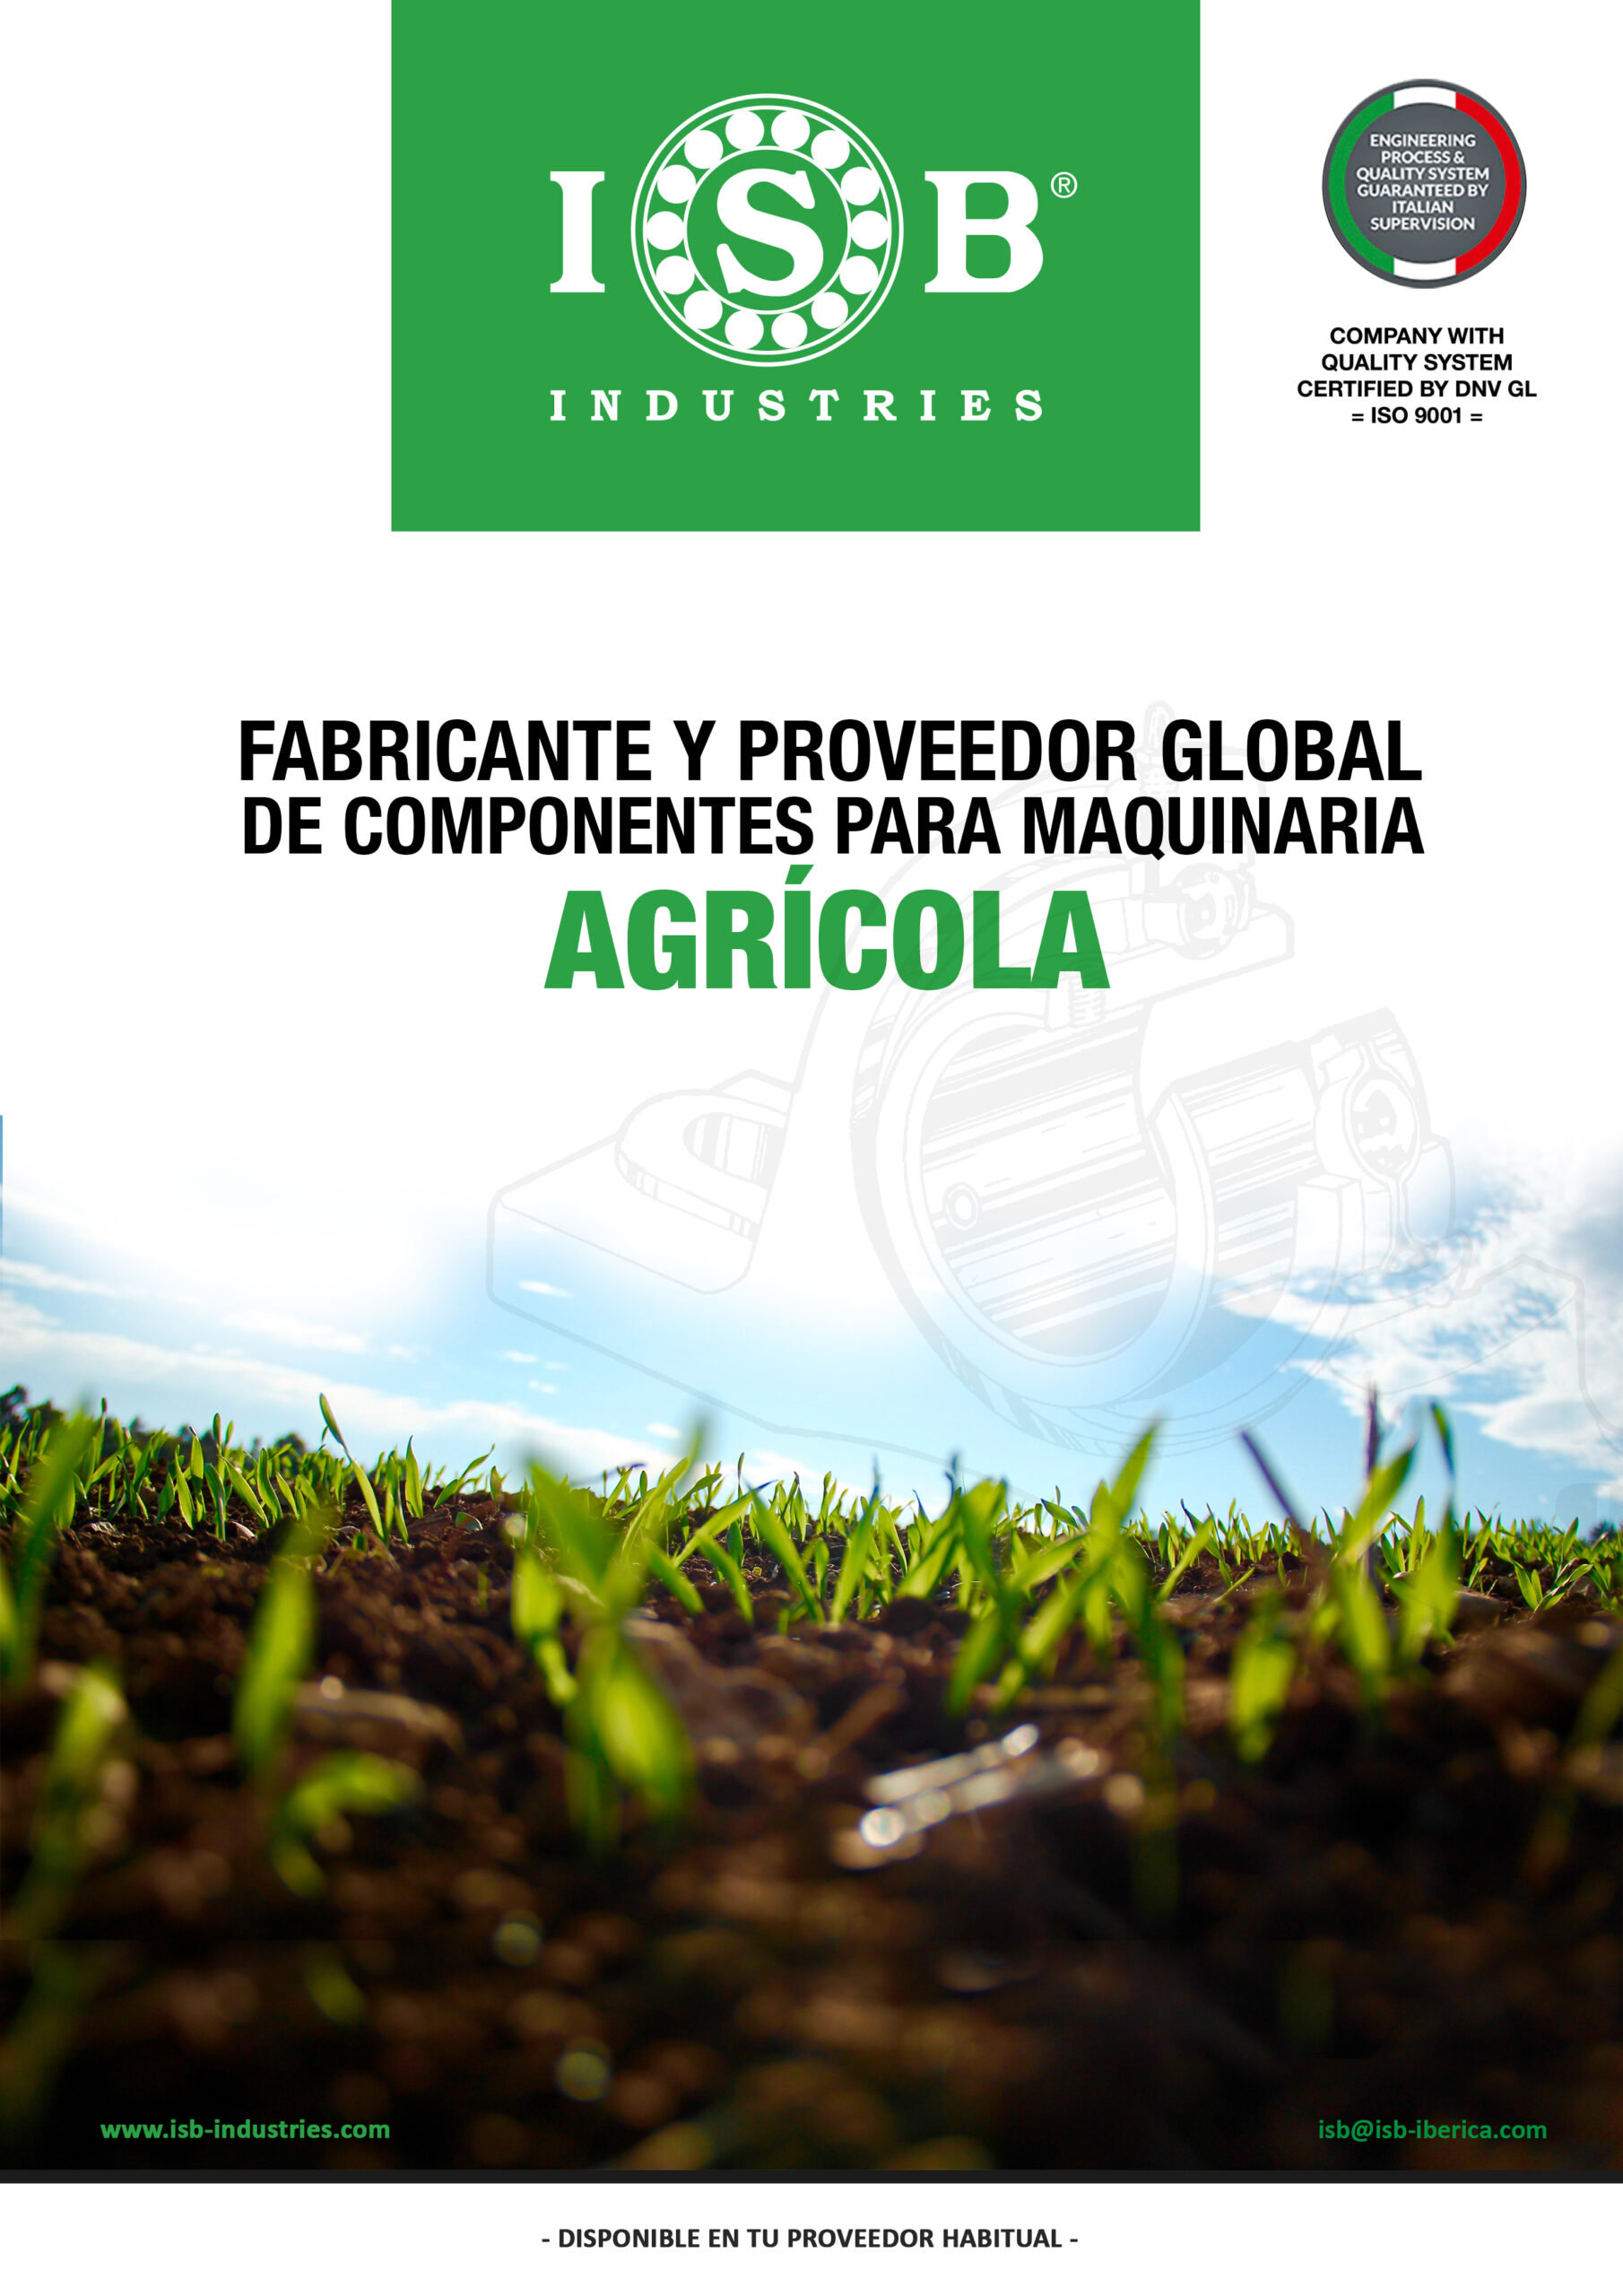 Dossier-gama-agricola-ISB-Iberica-scaled.jpg